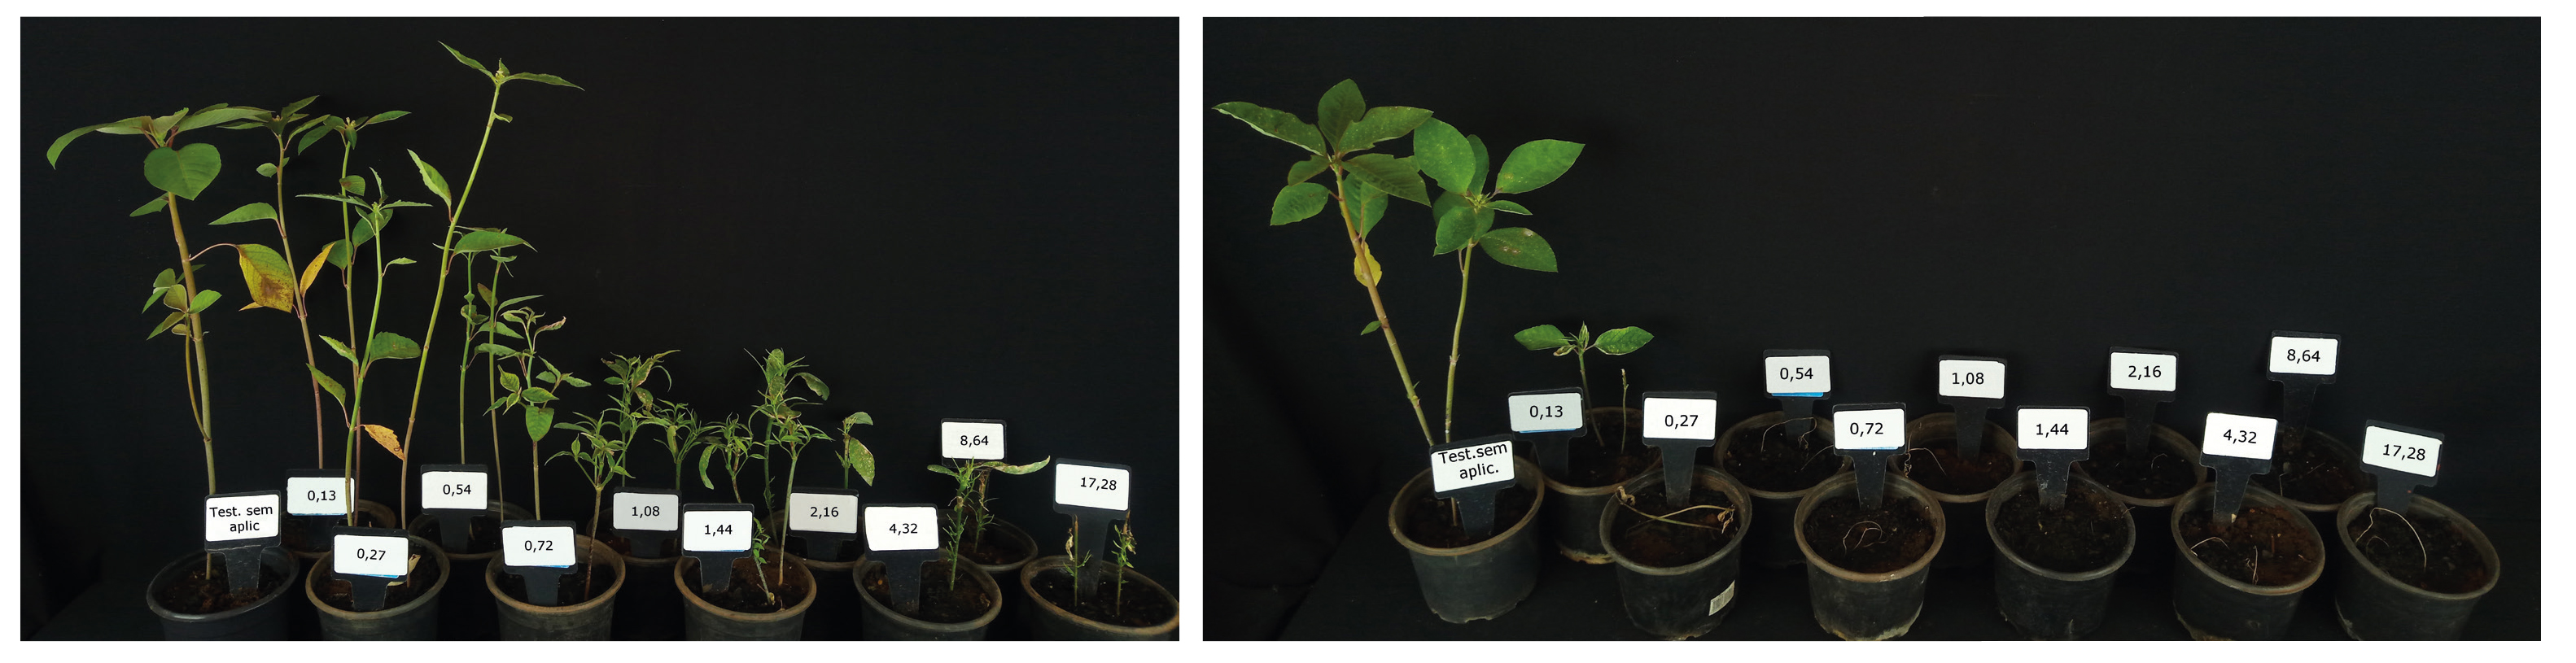 Plantas resistentes à aplicação de glifosato (esquerda) e suscetíveis ao herbicida (direita)